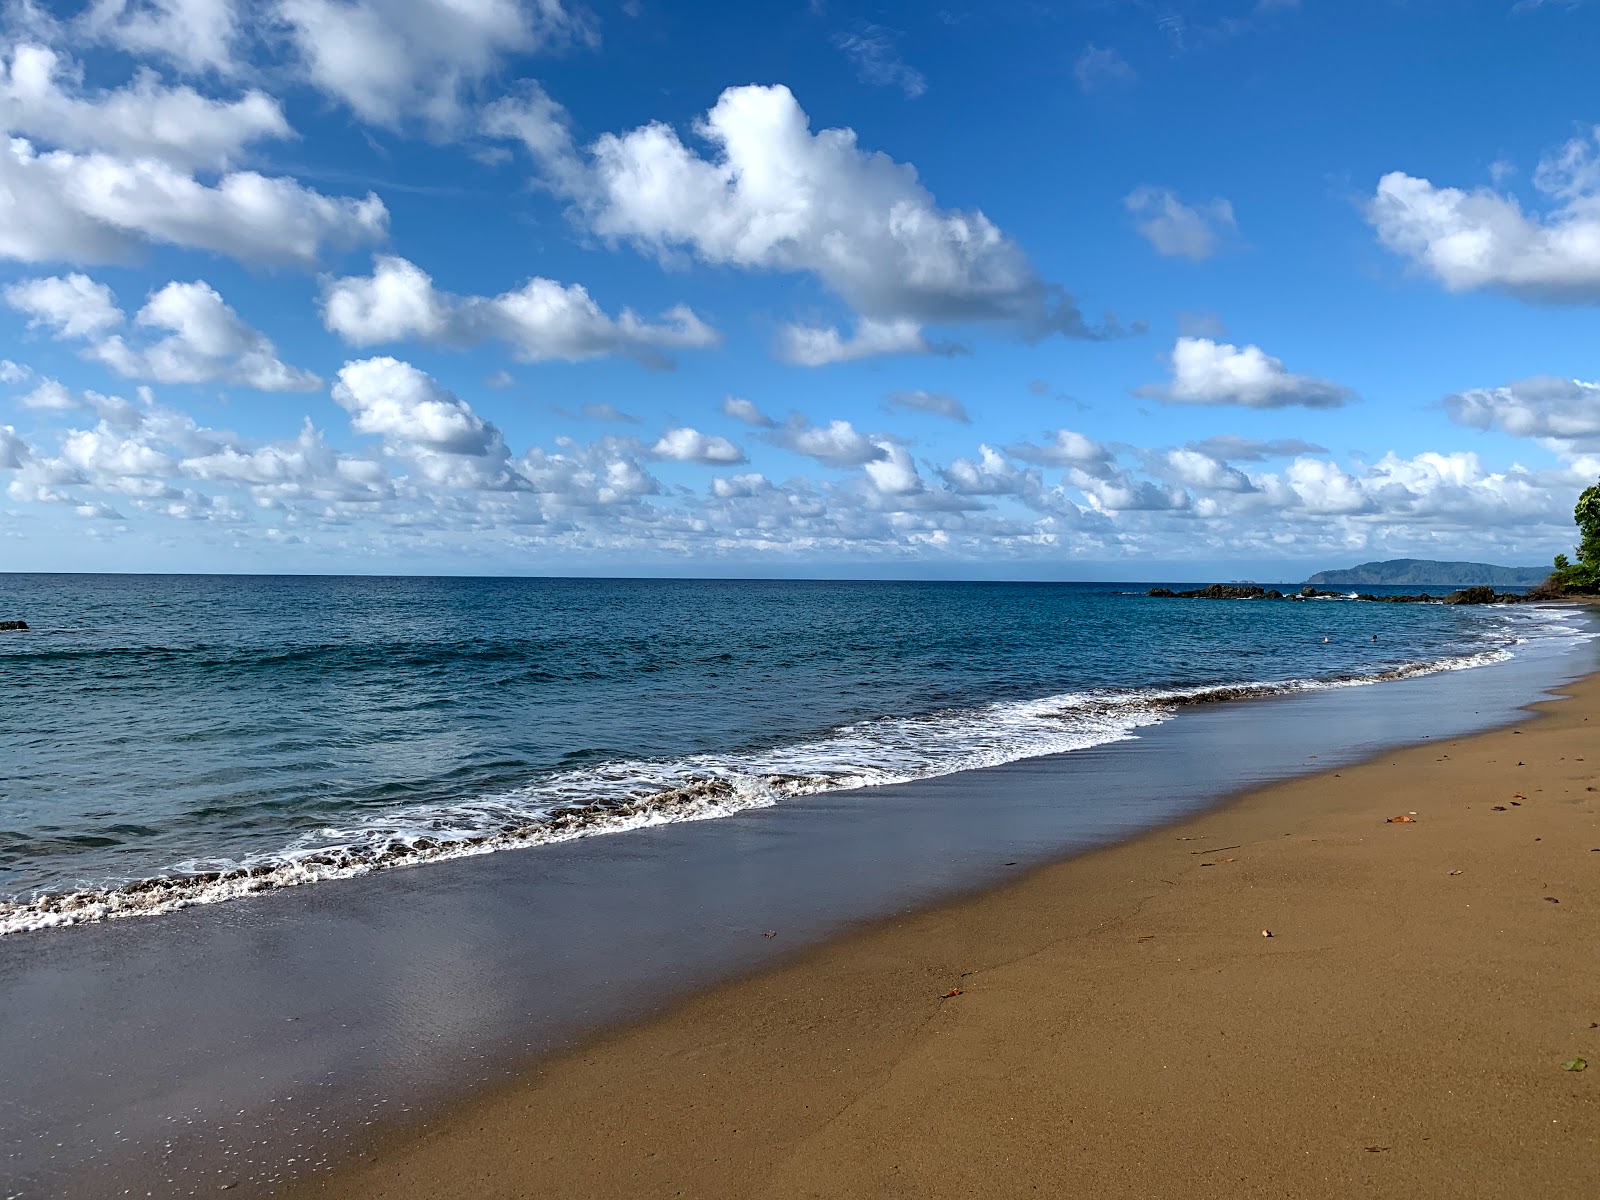 Playa Las Caletas'in fotoğrafı geniş plaj ile birlikte